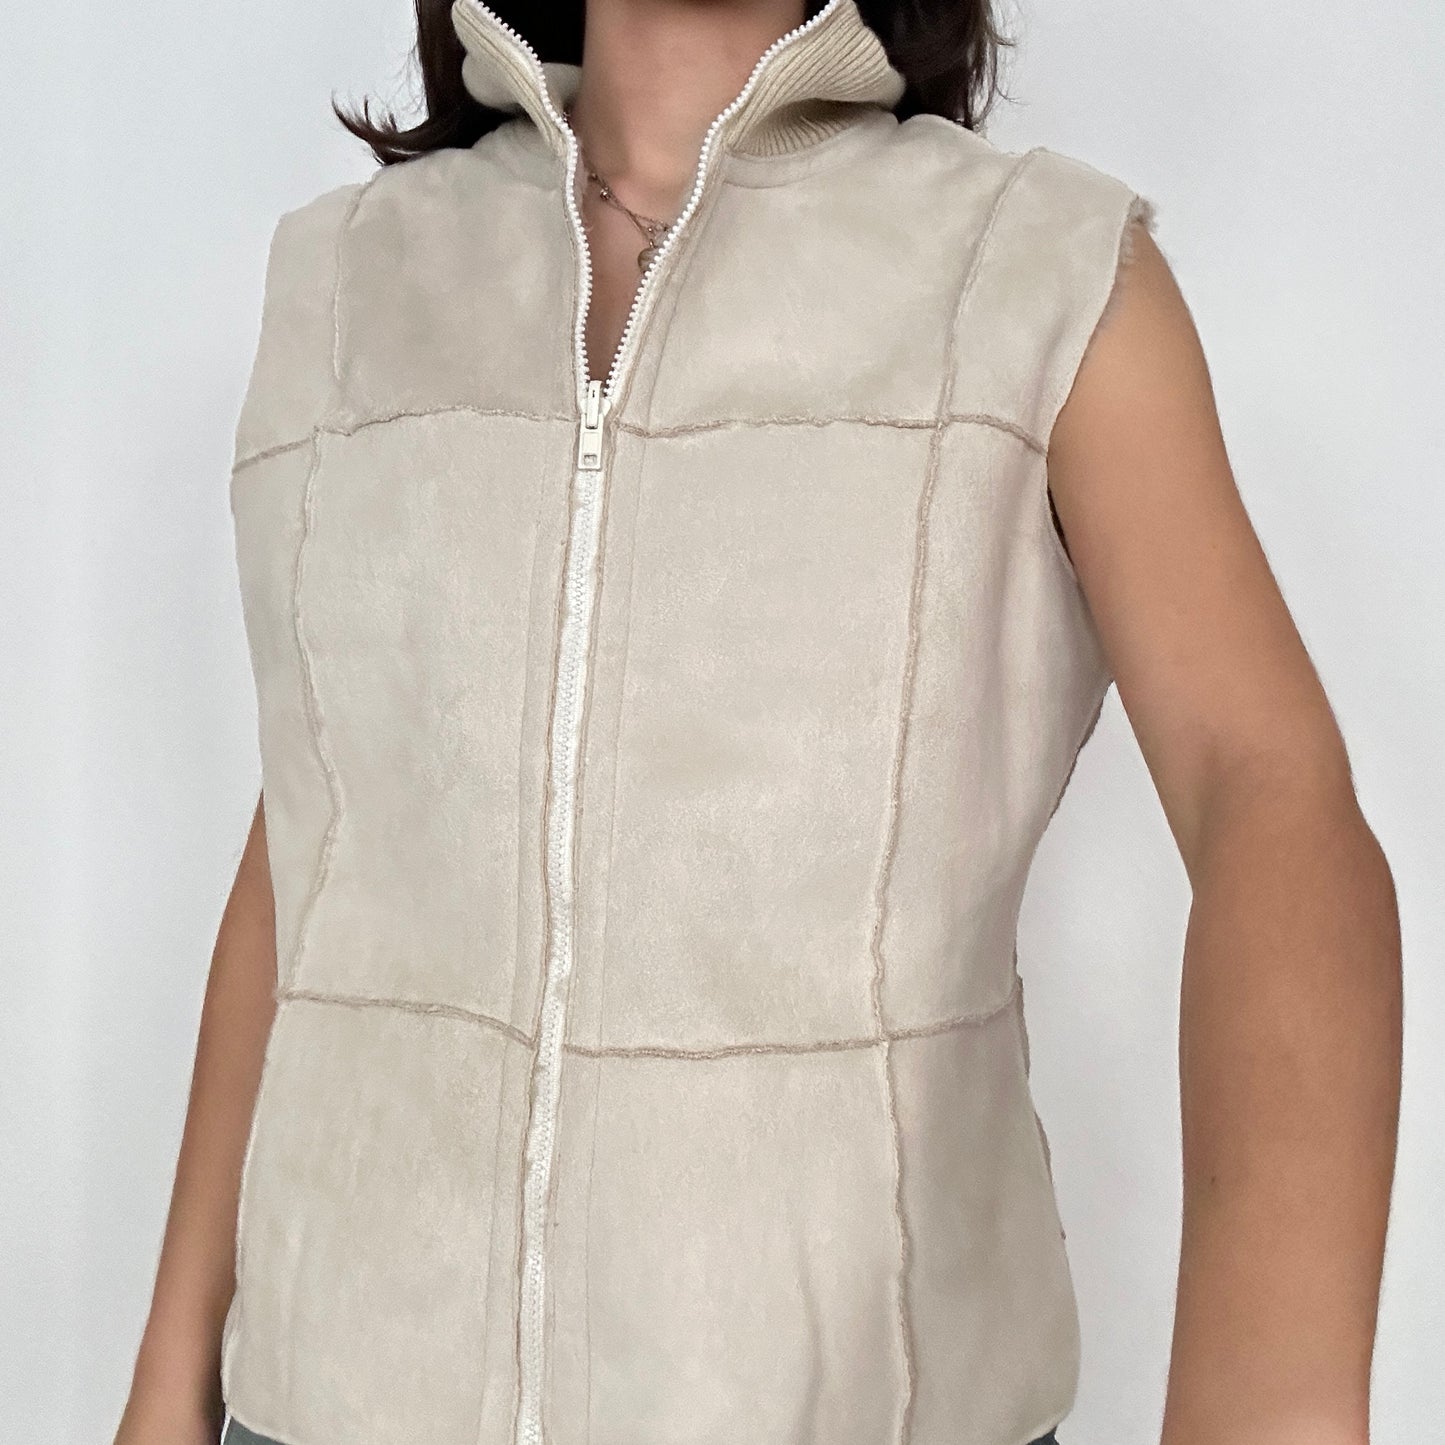 Y2K Vintage Fleece Zip up Vest